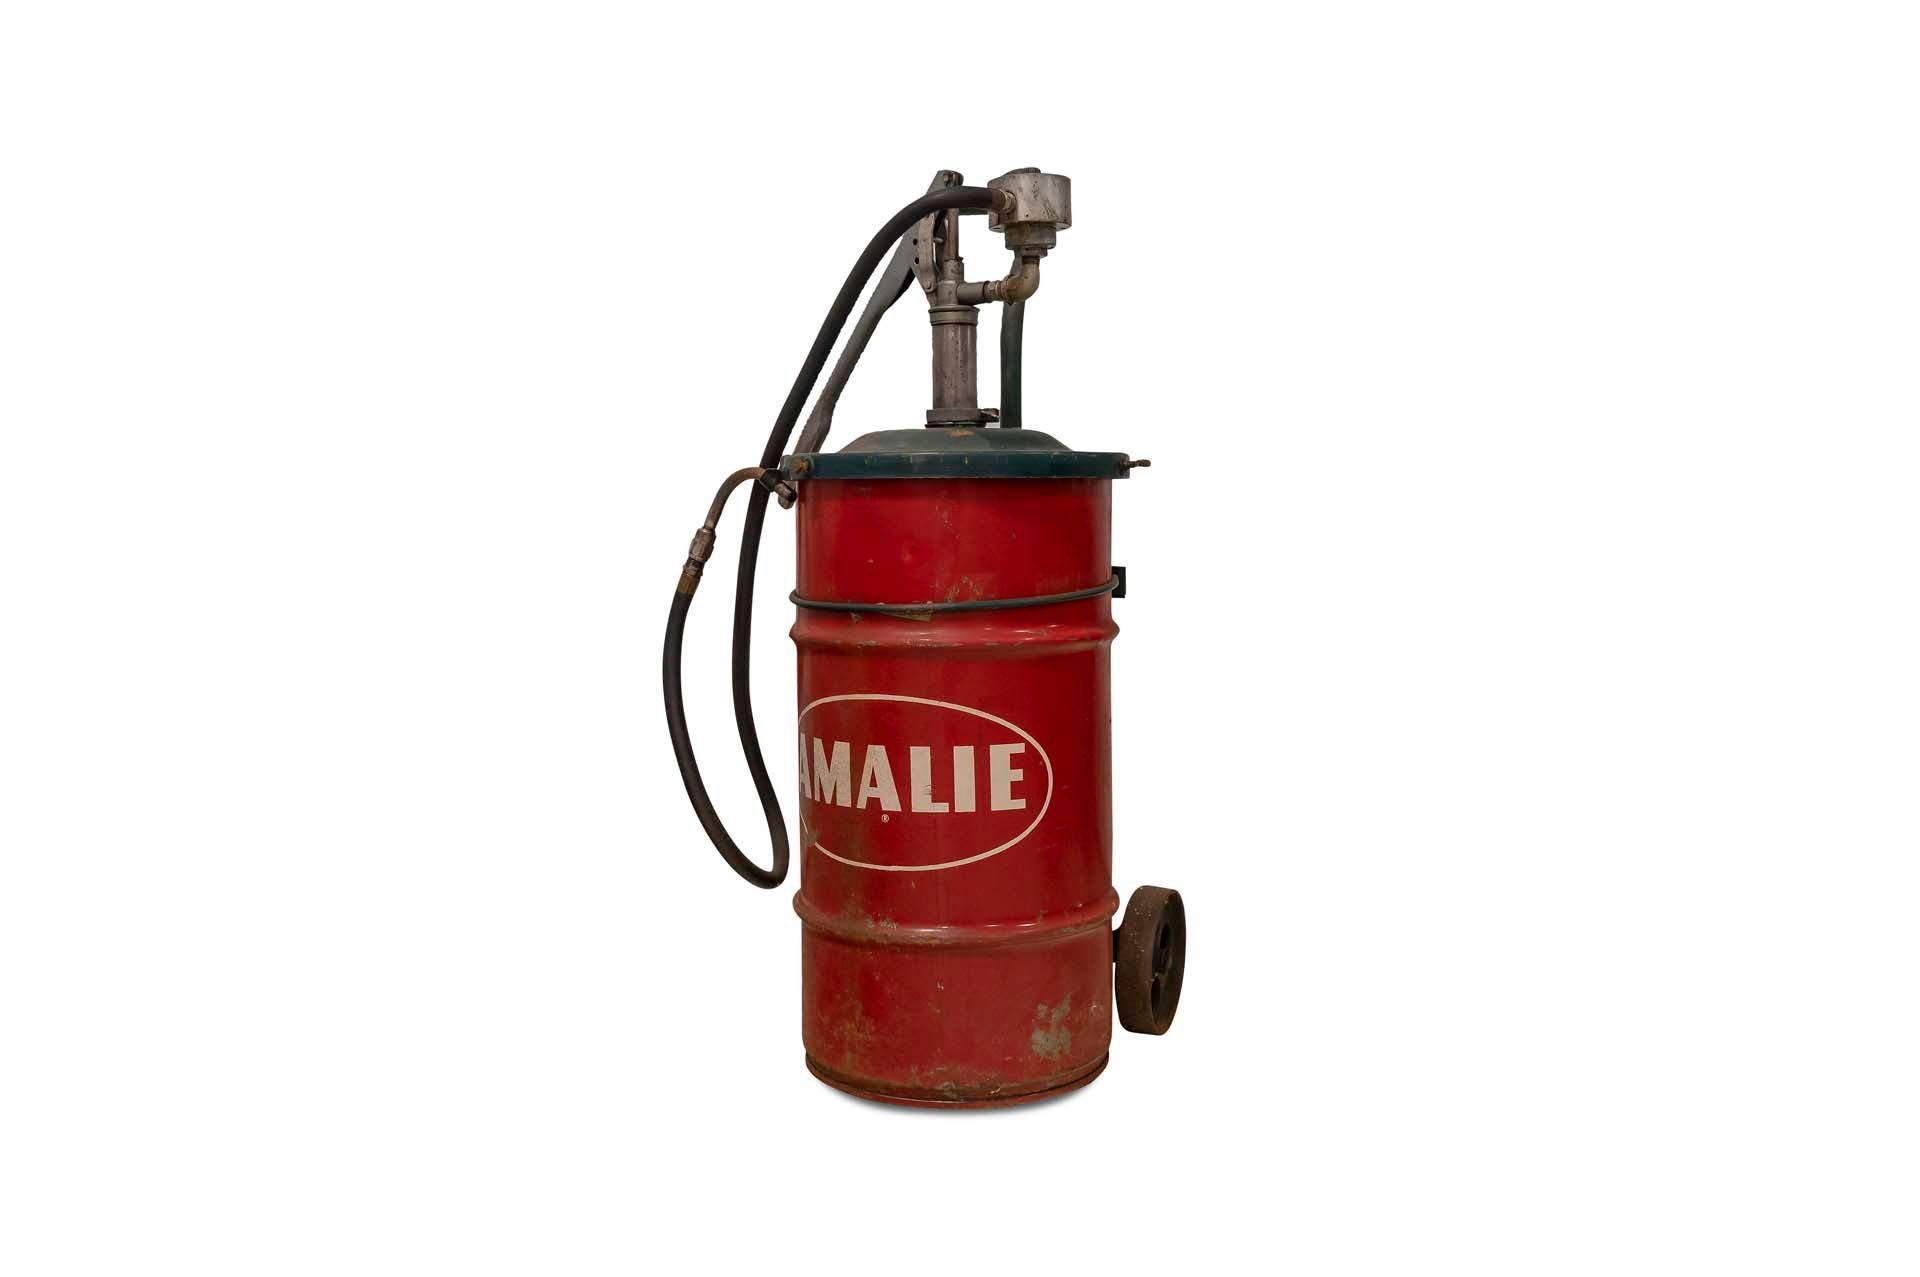 For Sale 'Amalie' Oil Pump